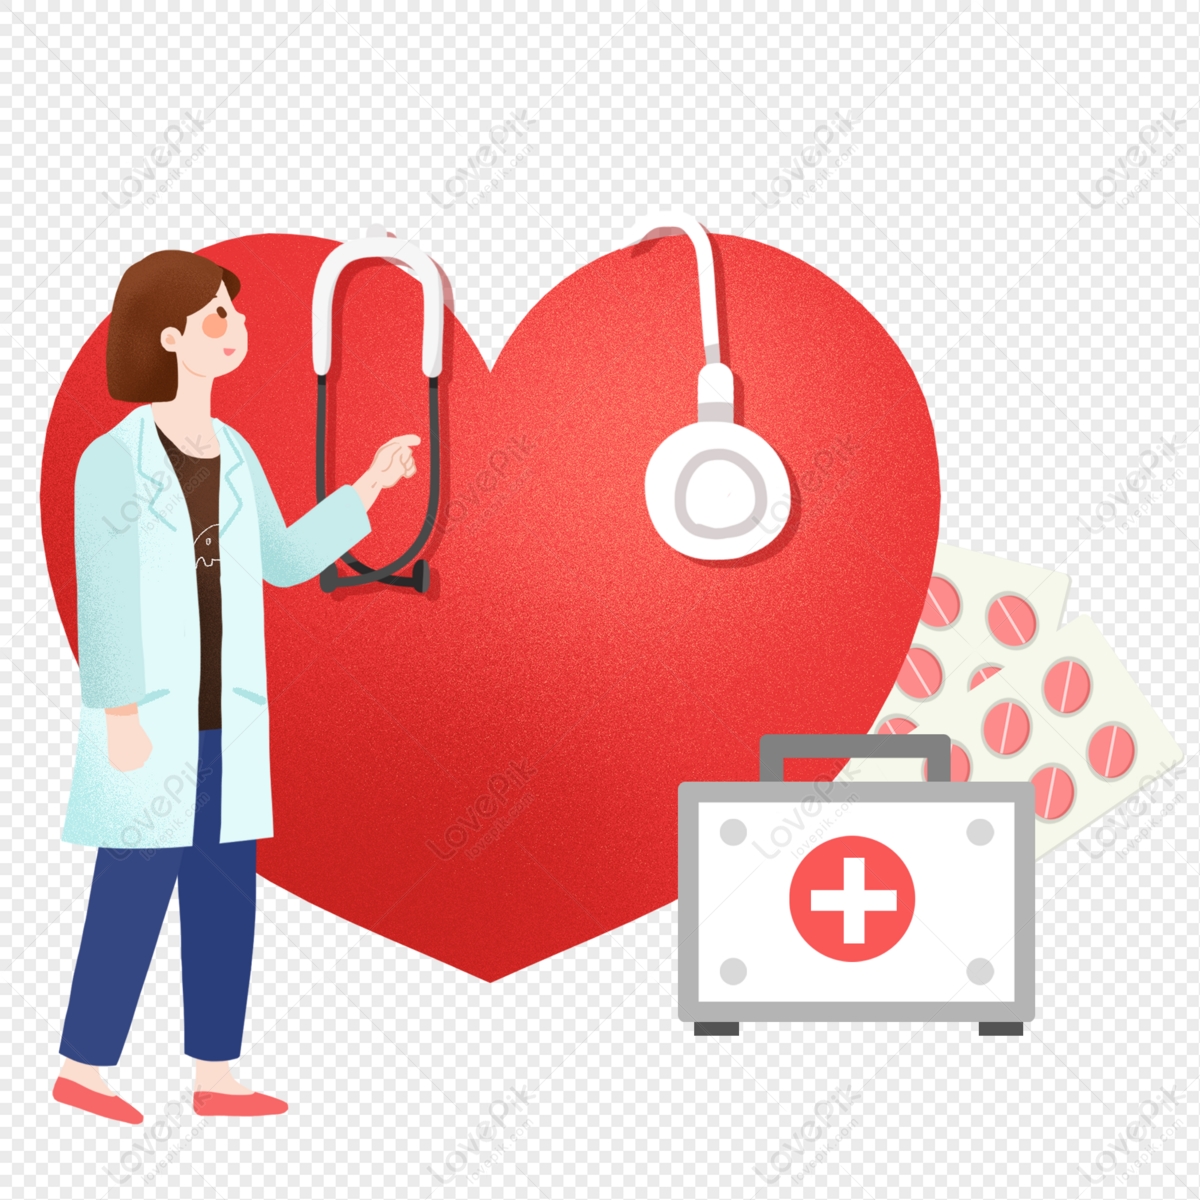 Ngày thế giới bác sĩ và trái tim khỏe mạnh là dịp để nhắc nhở mọi người về tầm quan trọng của sức khỏe tim mạch và công lao của những bác sĩ chuyên khoa trong việc chăm sóc và điều trị các bệnh về tim mạch. Hãy cùng xem những hình ảnh đầy ý nghĩa này để tôn vinh những nỗ lực của các y sĩ nhé!